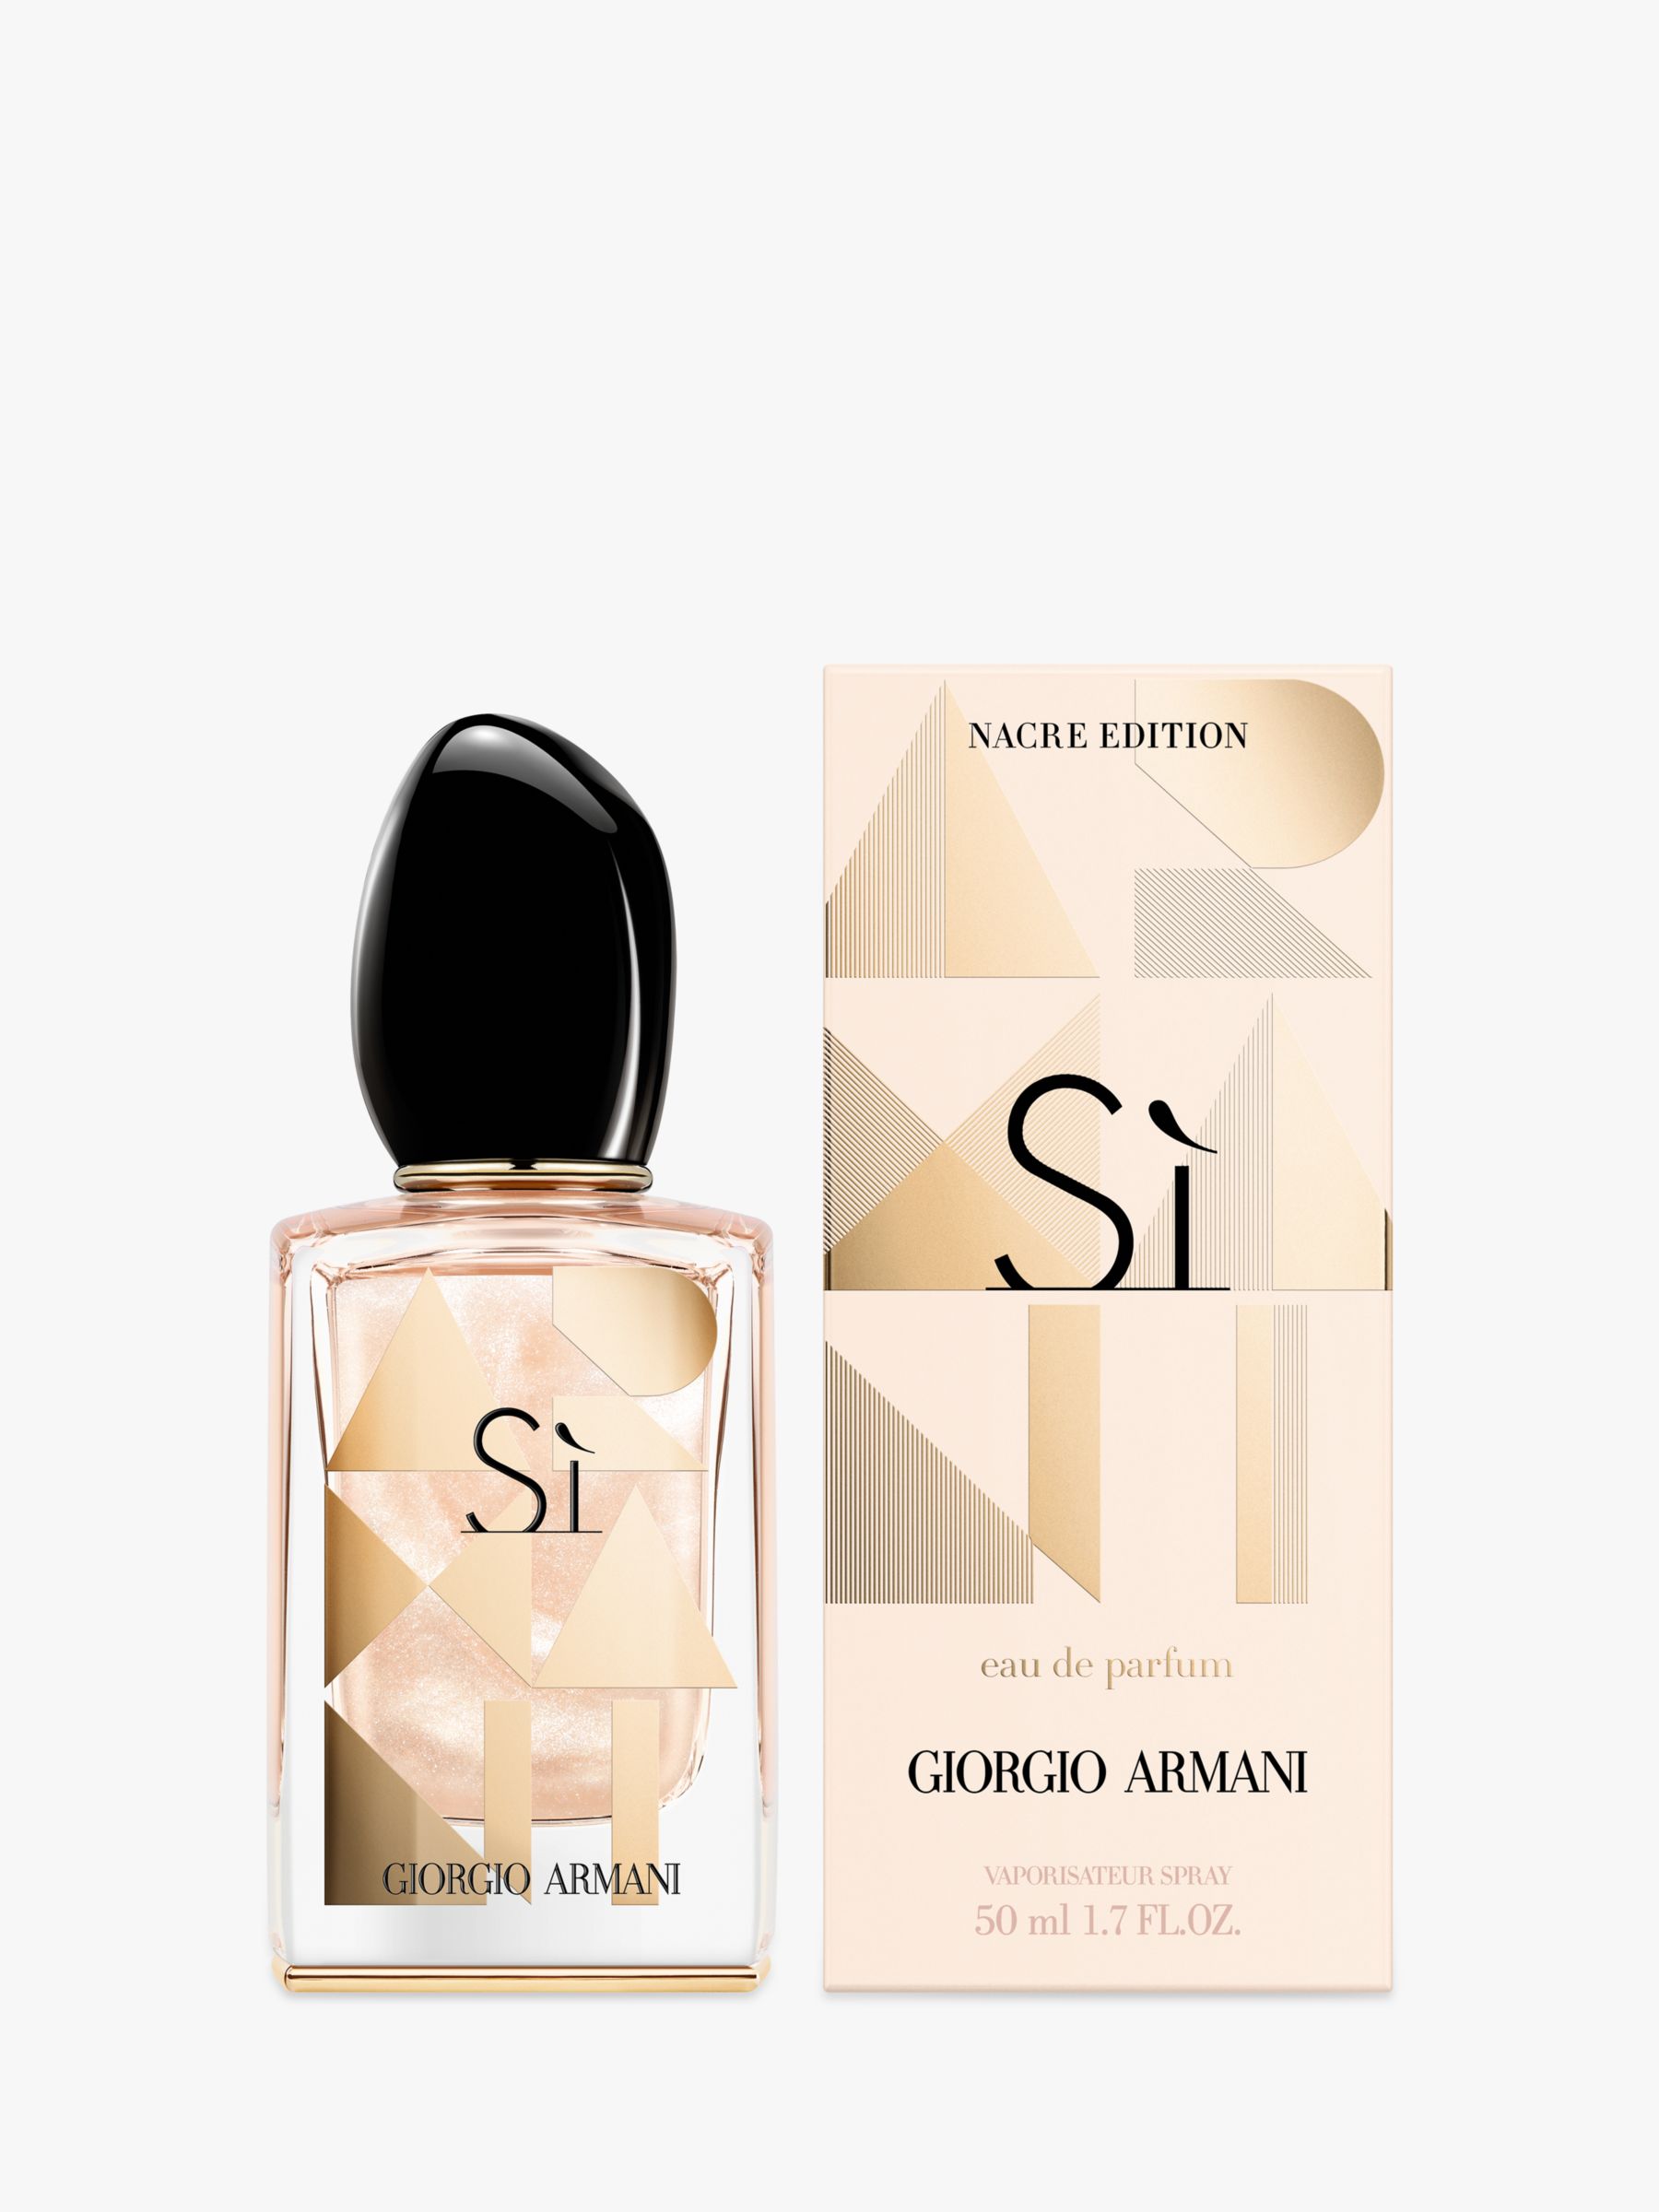 giorgio armani si perfume limited edition